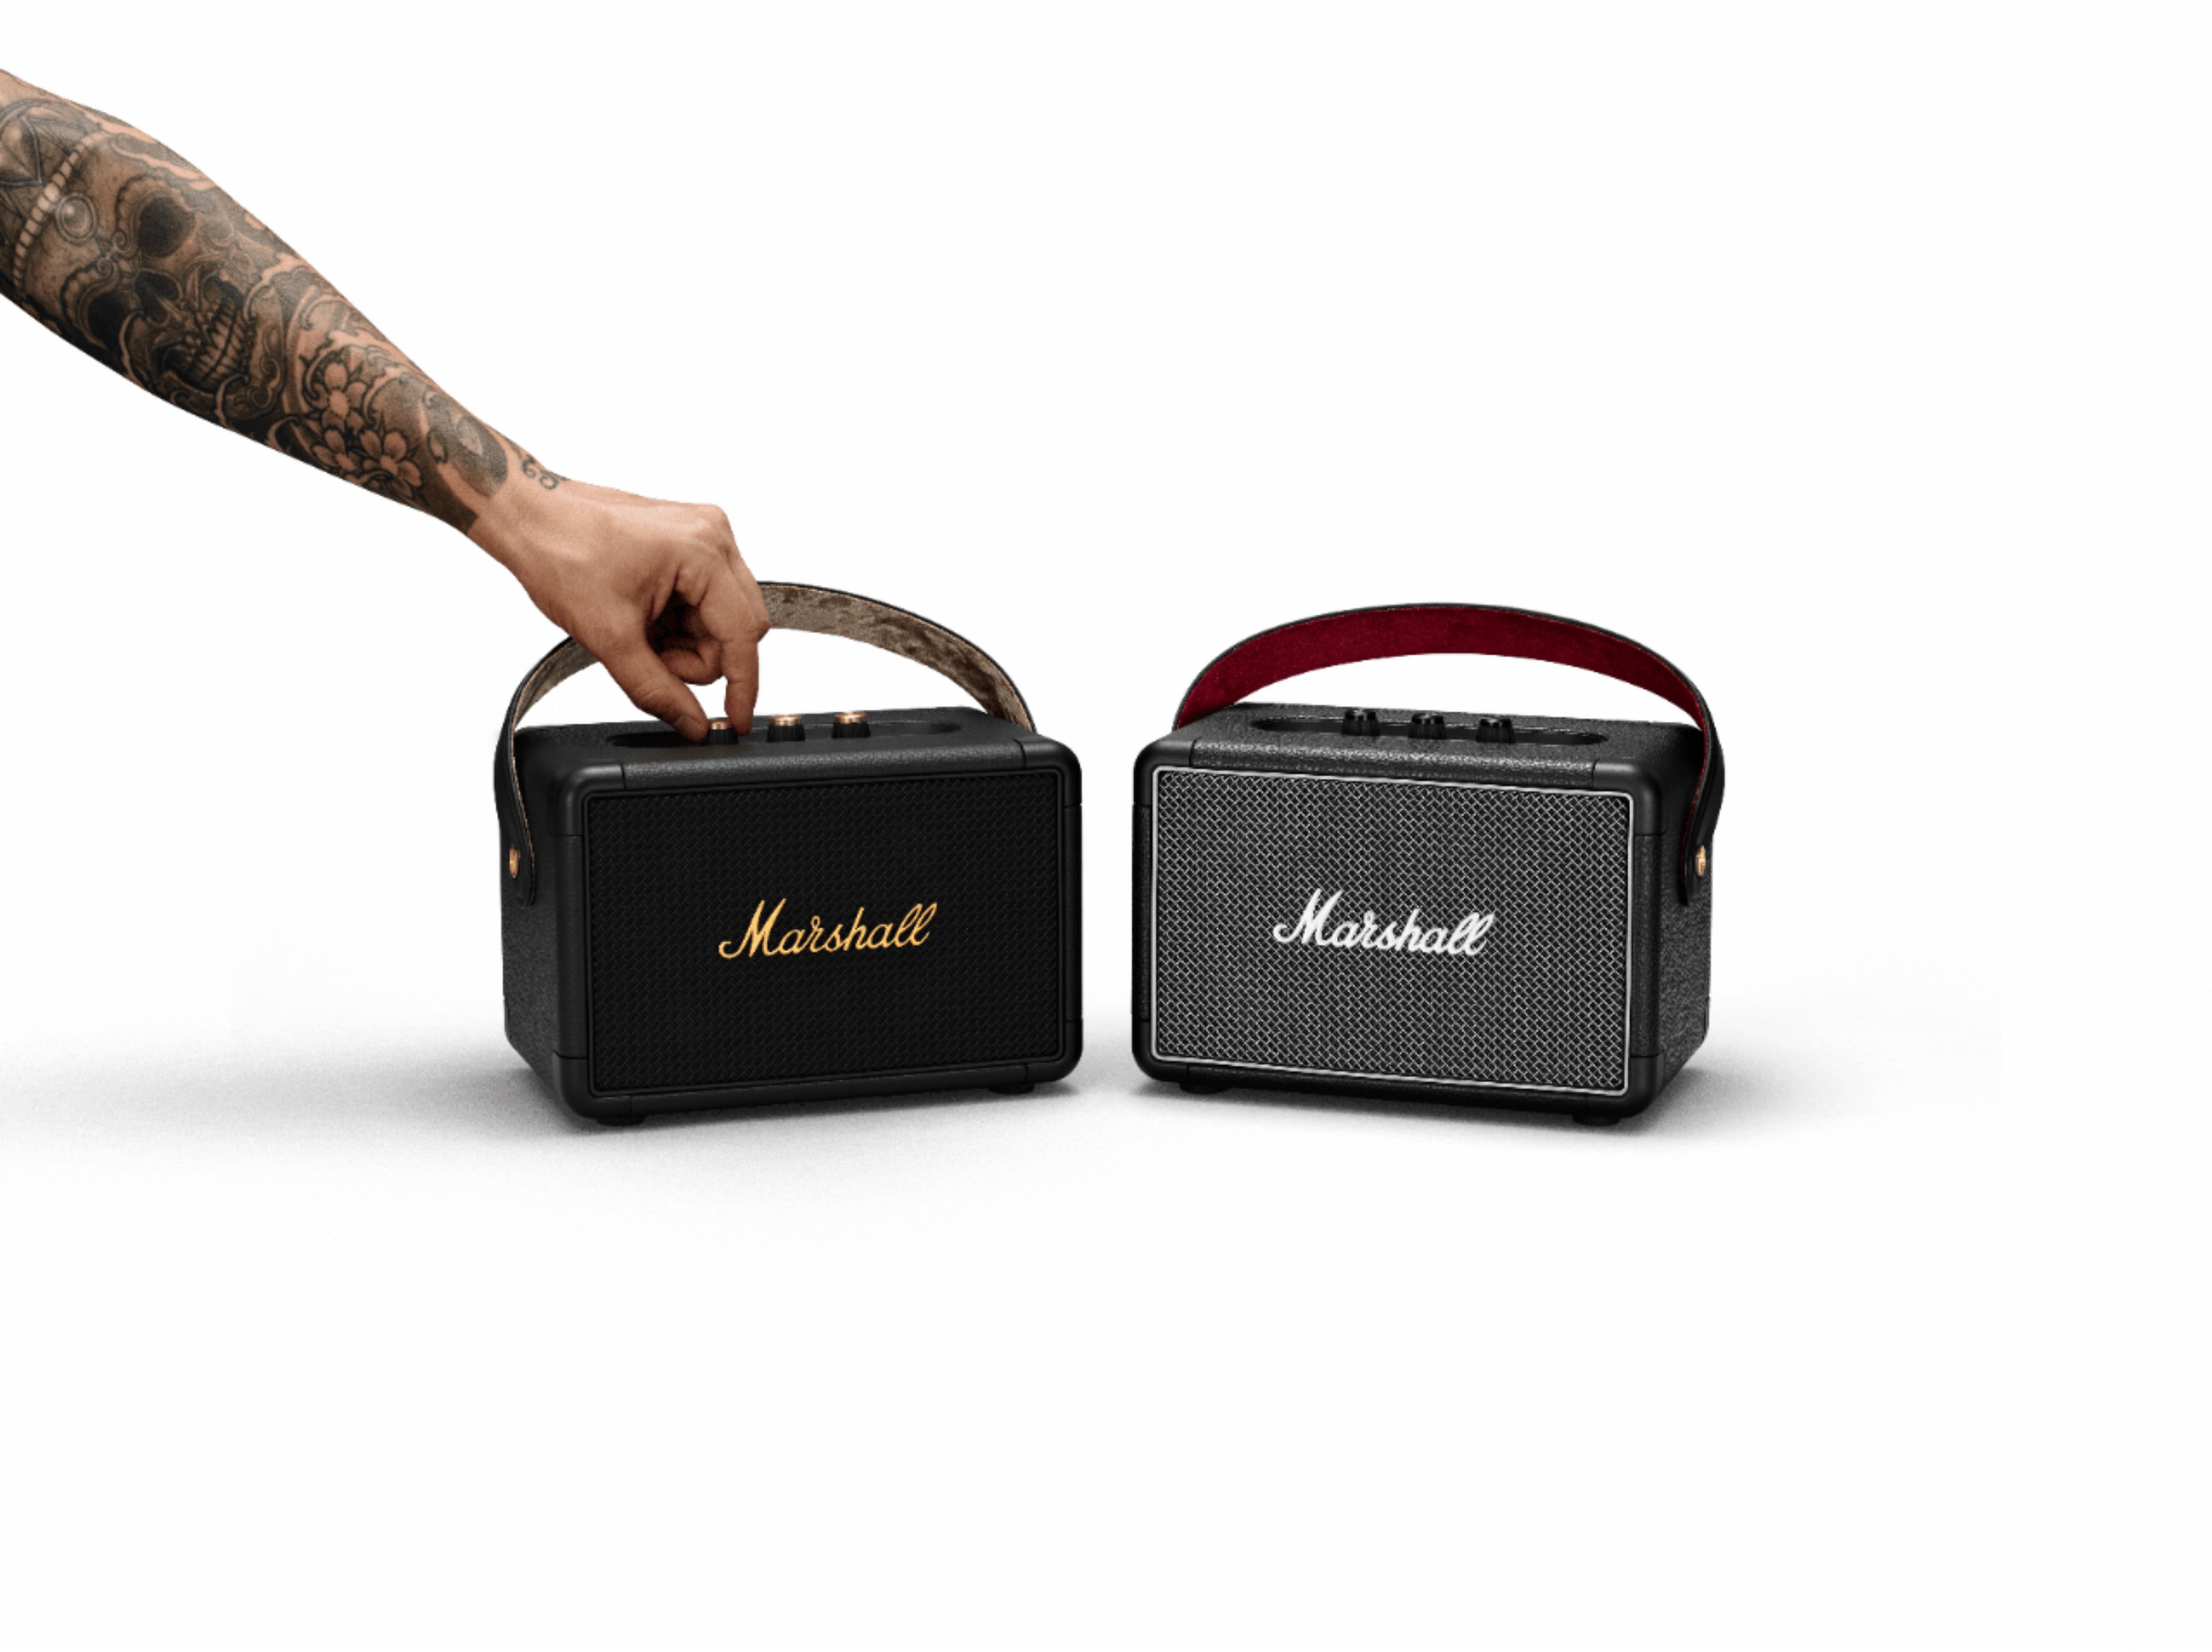 Marshall Kilburn II Portable Bluetooth Speaker Black and Brass 